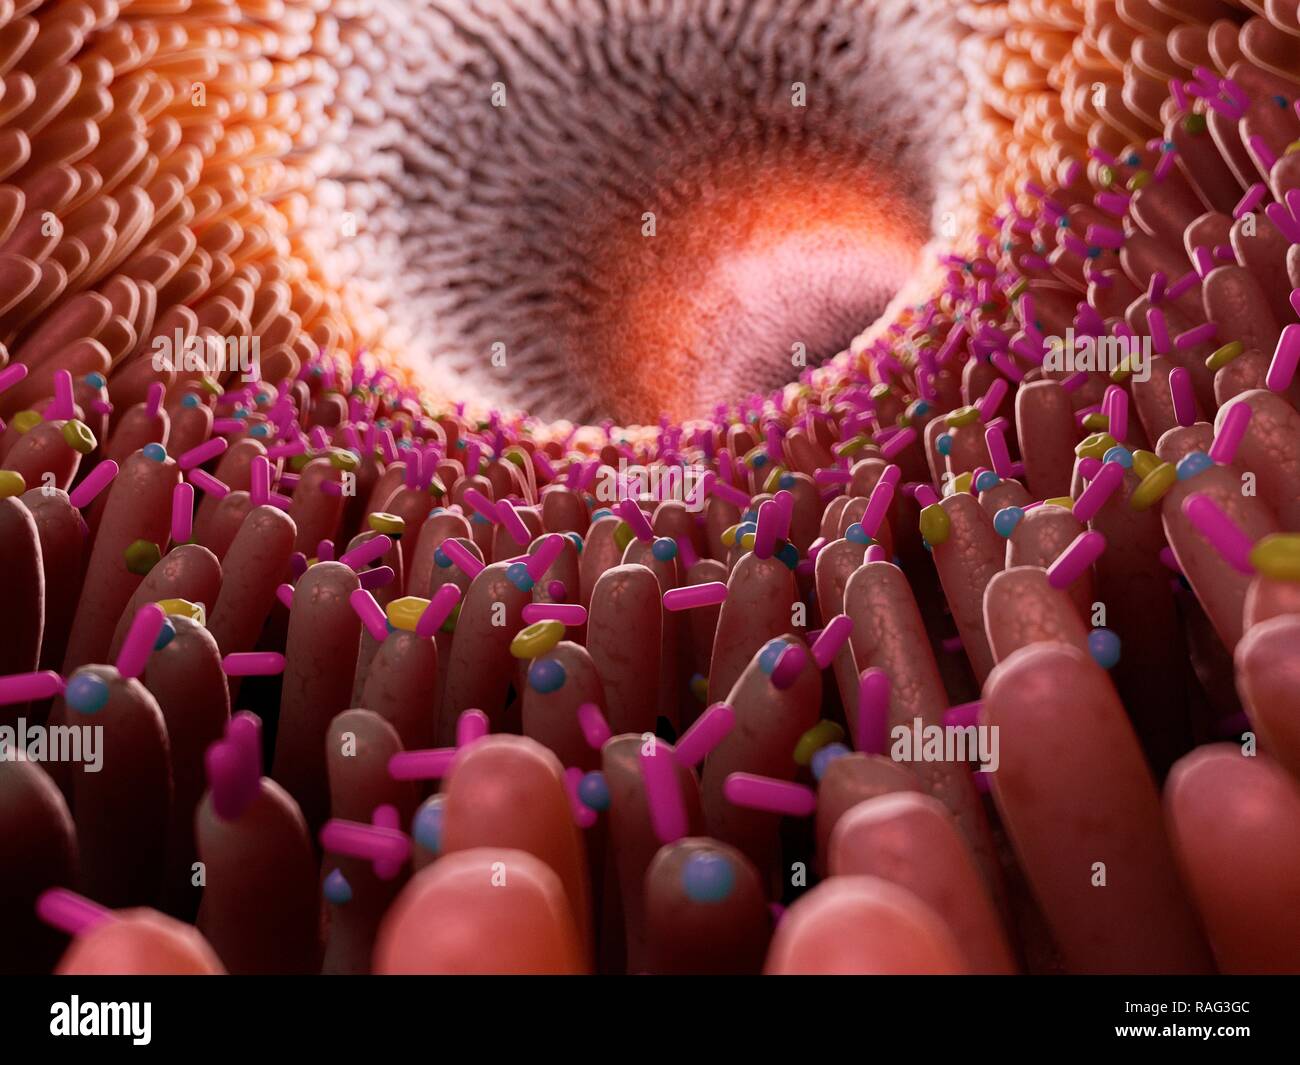 Illustration de bactéries dans l'intestin. Banque D'Images